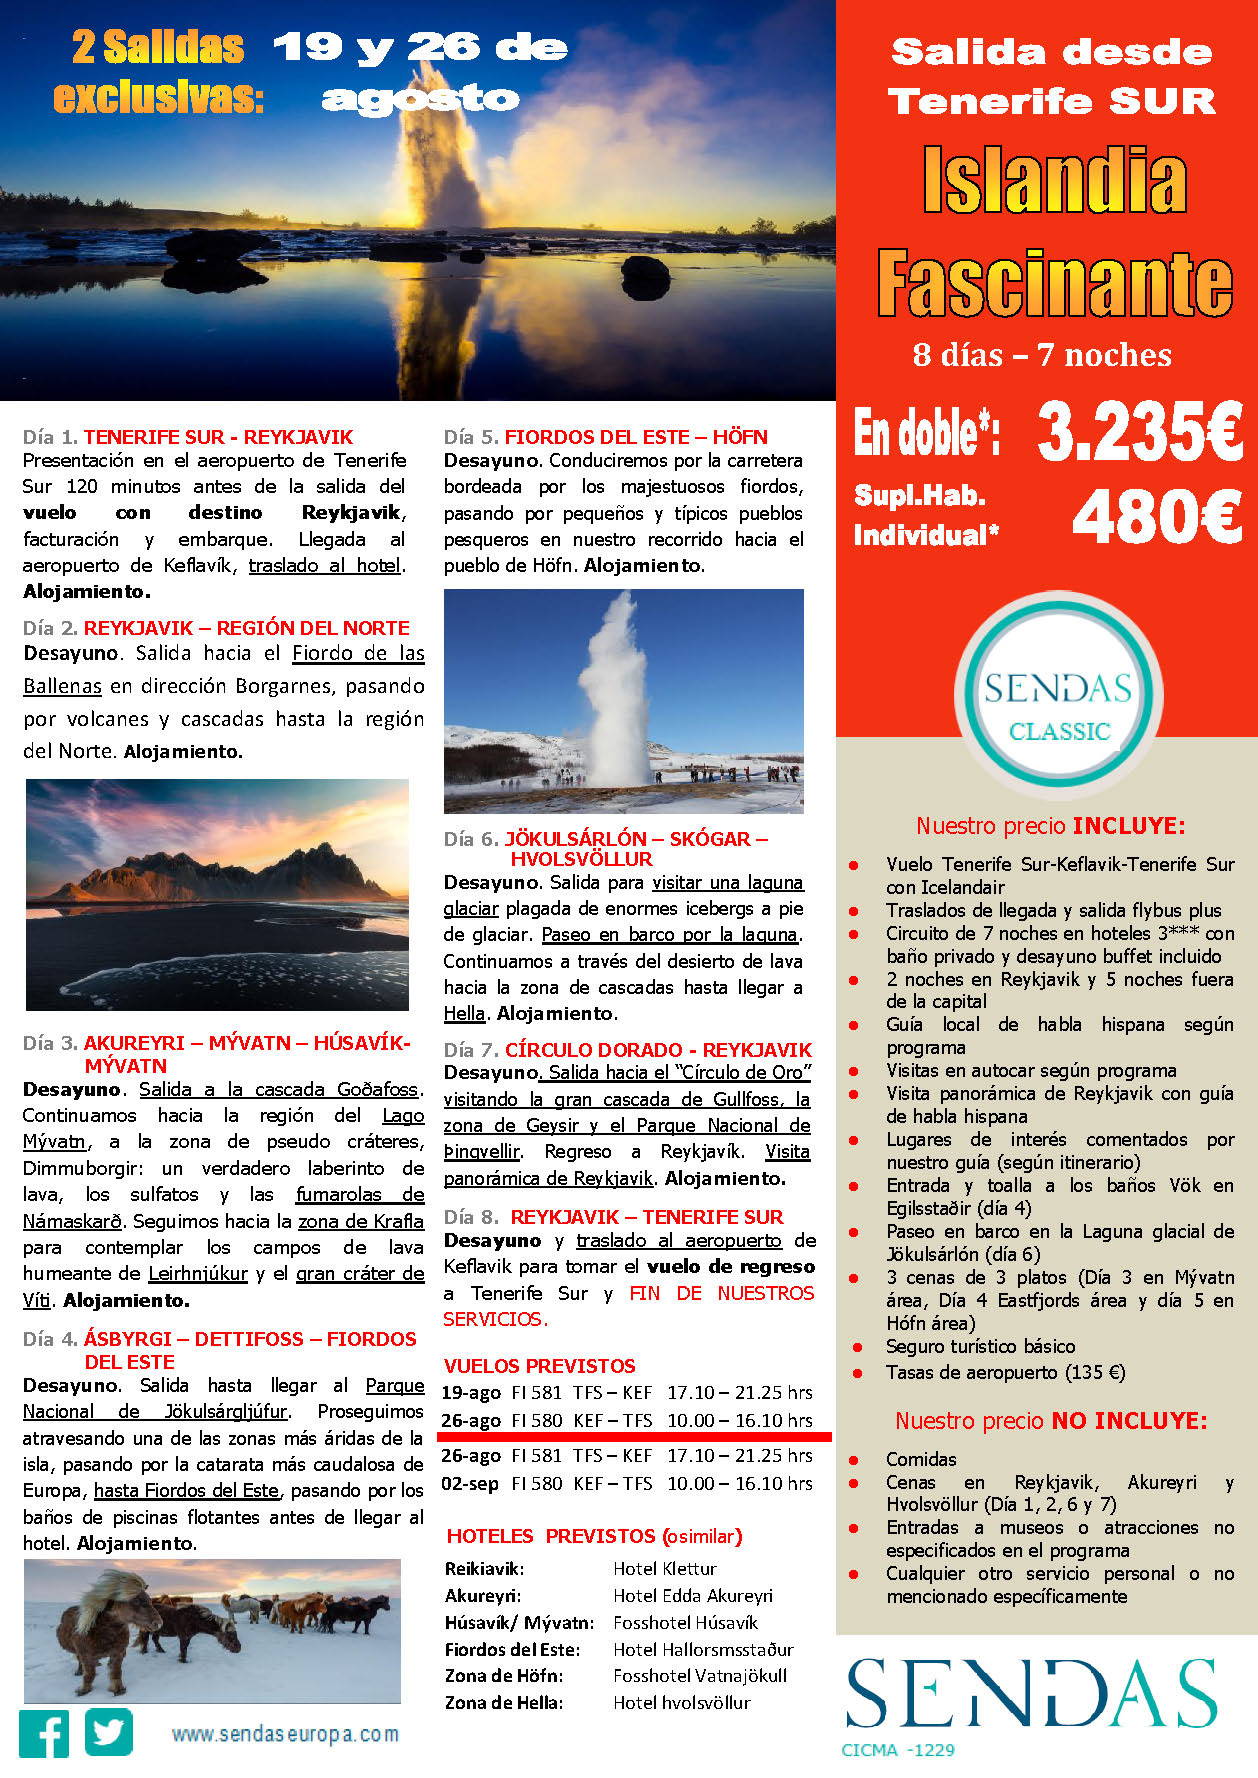 Oferta Sendas Agosto 2023 Circuito Islandia Fascinante 8 dias salida en vuelo directo desde Tenerife Sur